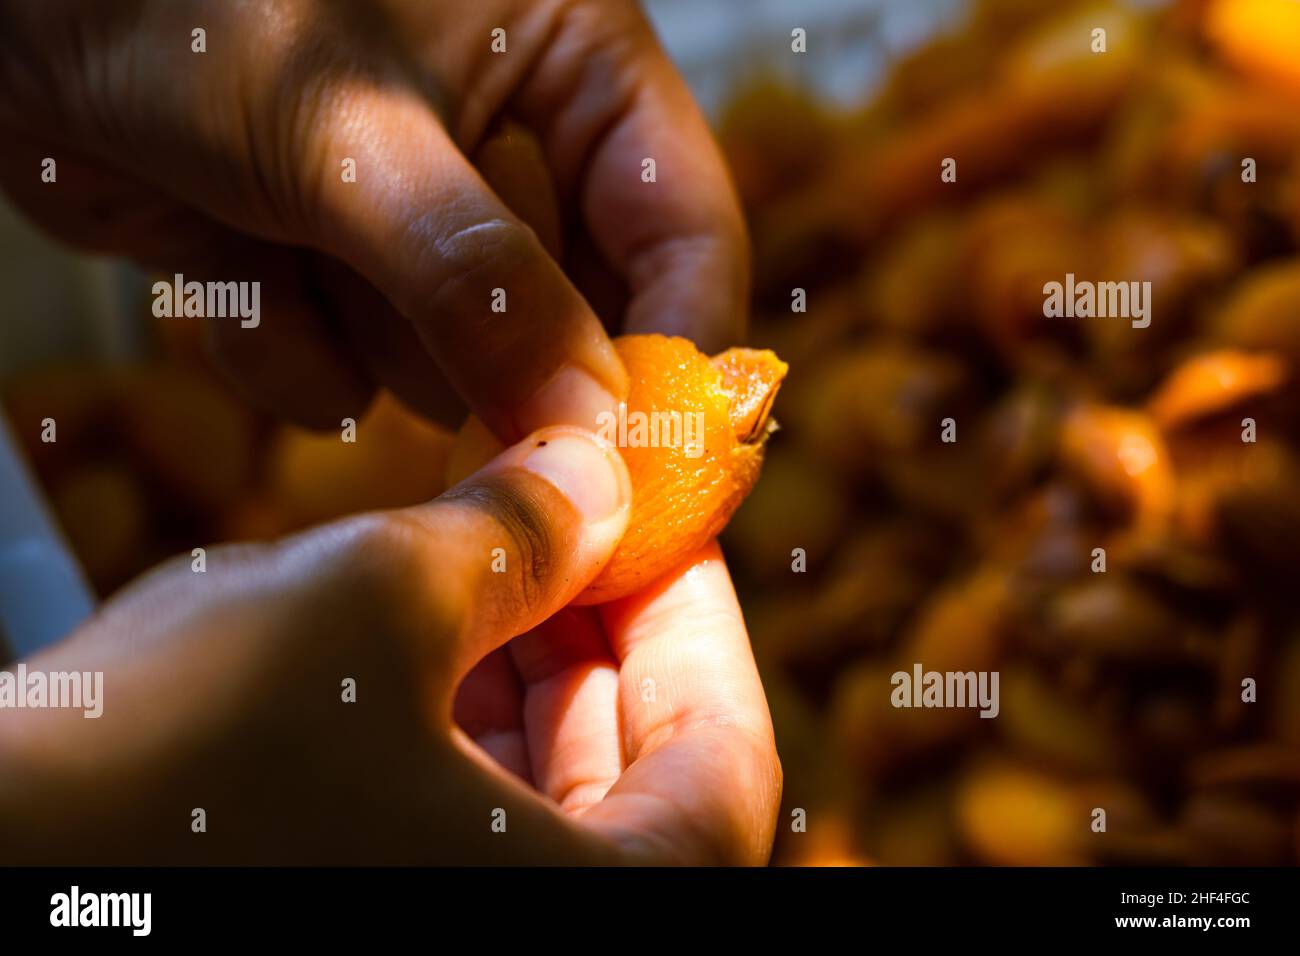 Herstellung von getrockneten Aprikosen. Frau extrahiert den Samen zum Trocknen der Aprikose. Stockfoto